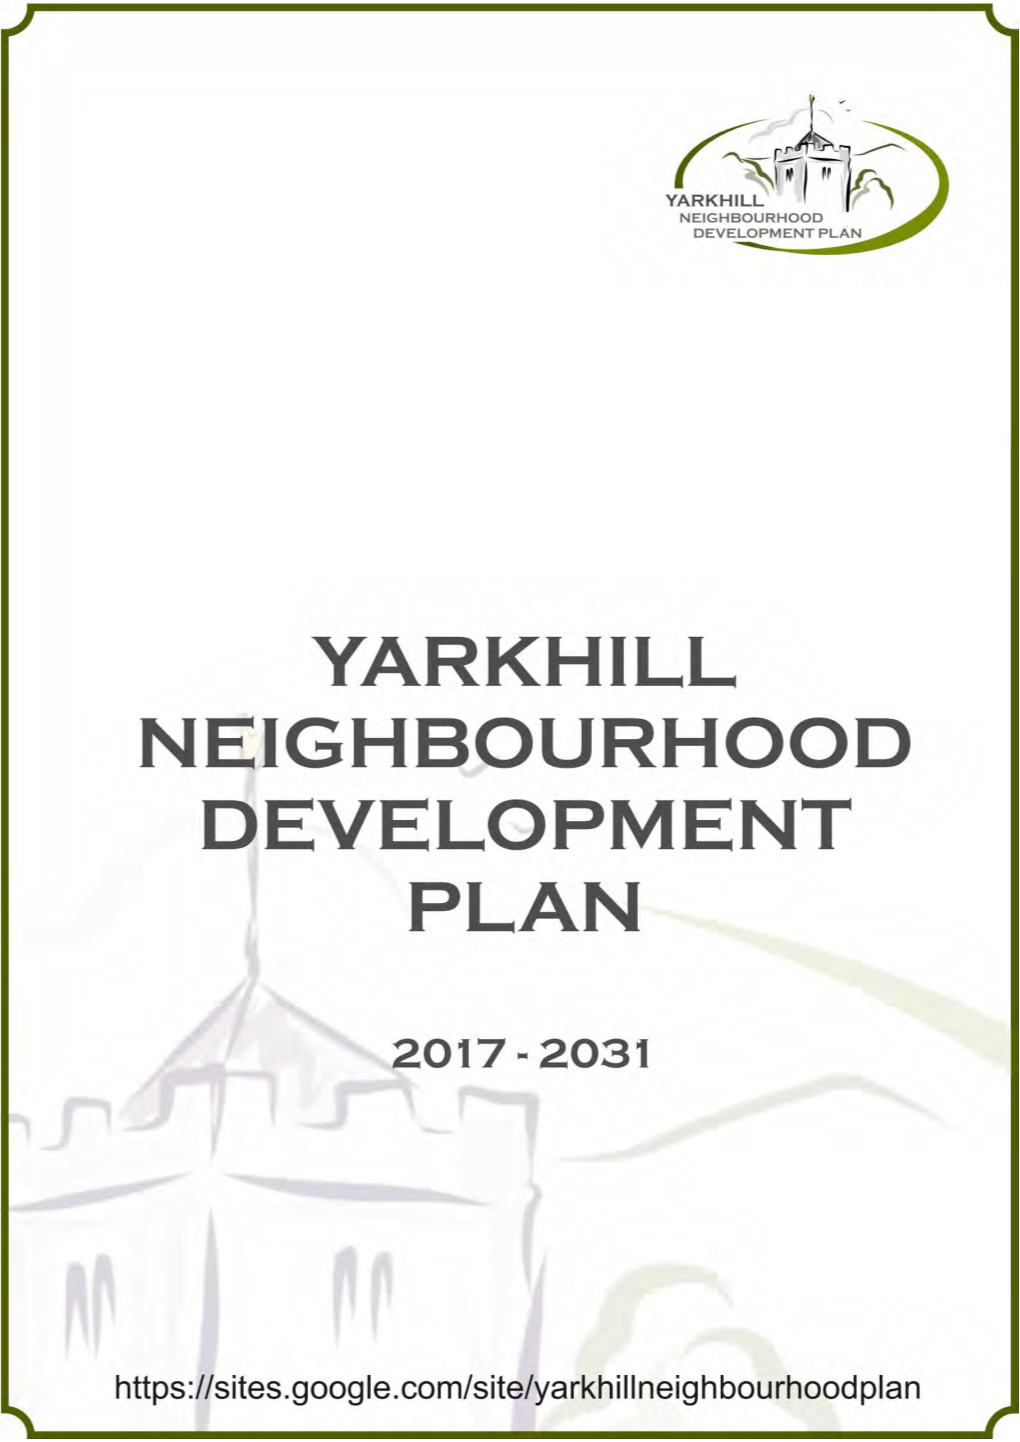 Yarkhill Neighbourhood Development Plan November 2017